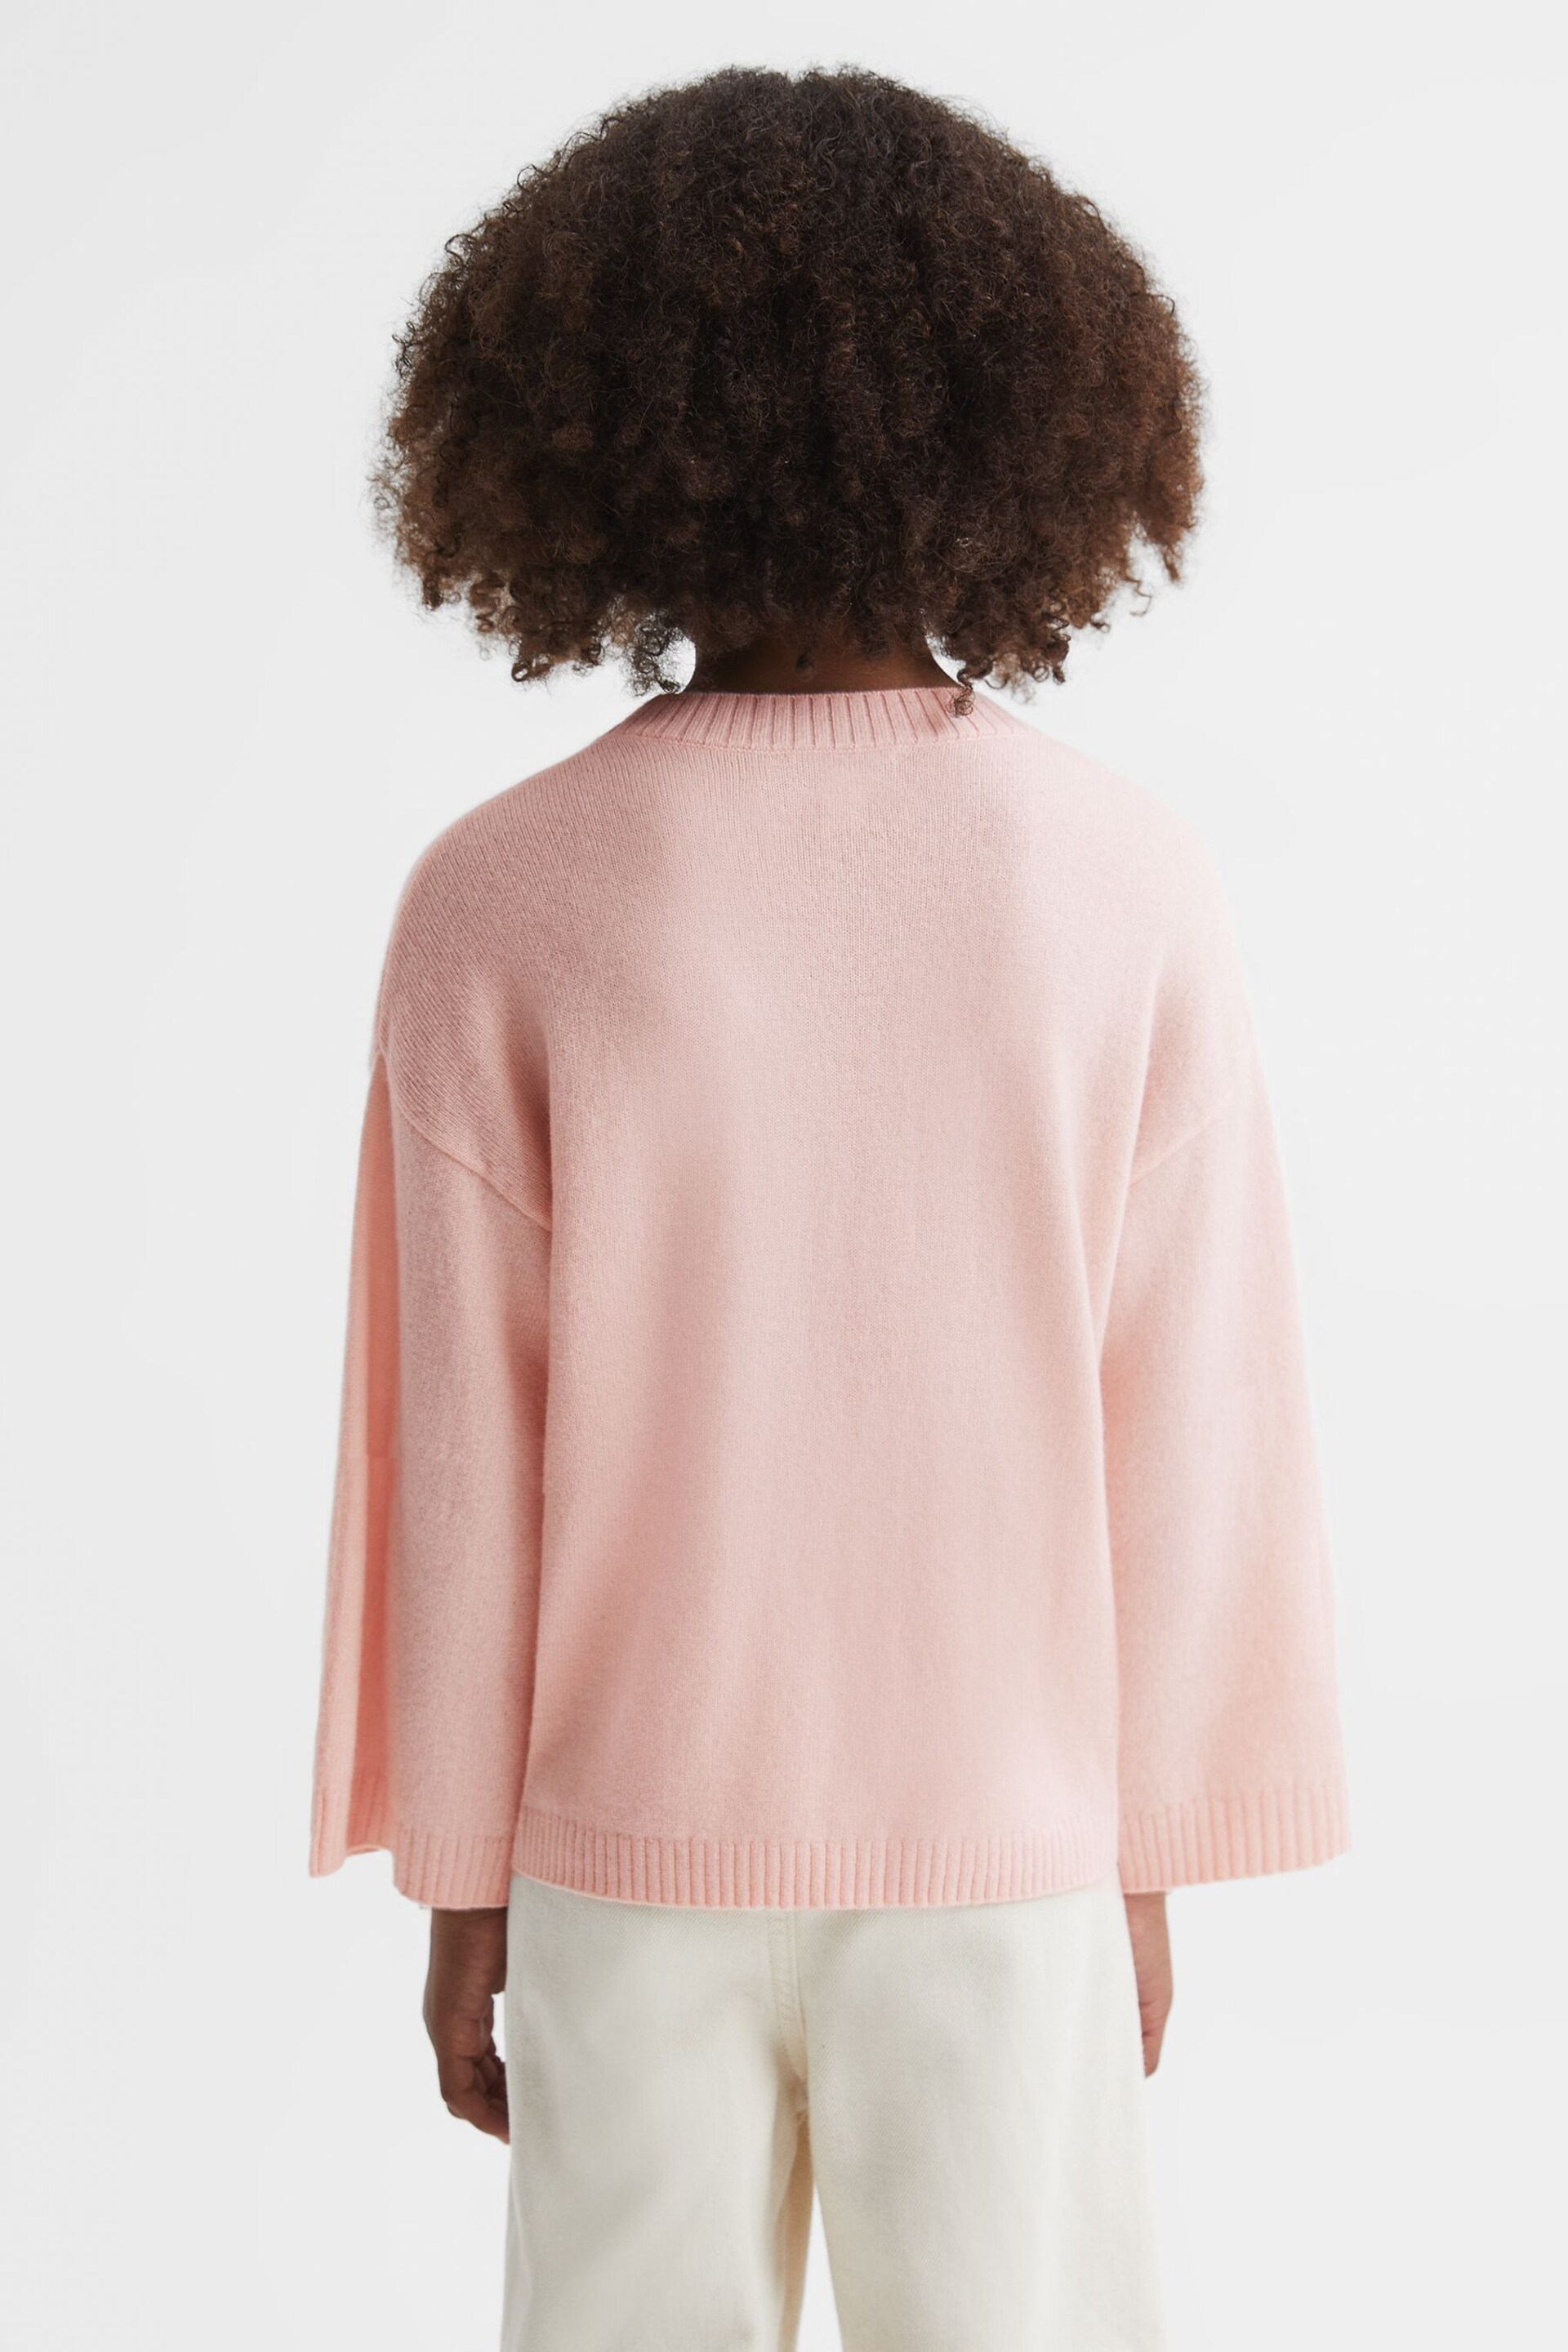 Reiss Pink Afi Senior Wool Blend Motif Jumper - Image 5 of 6